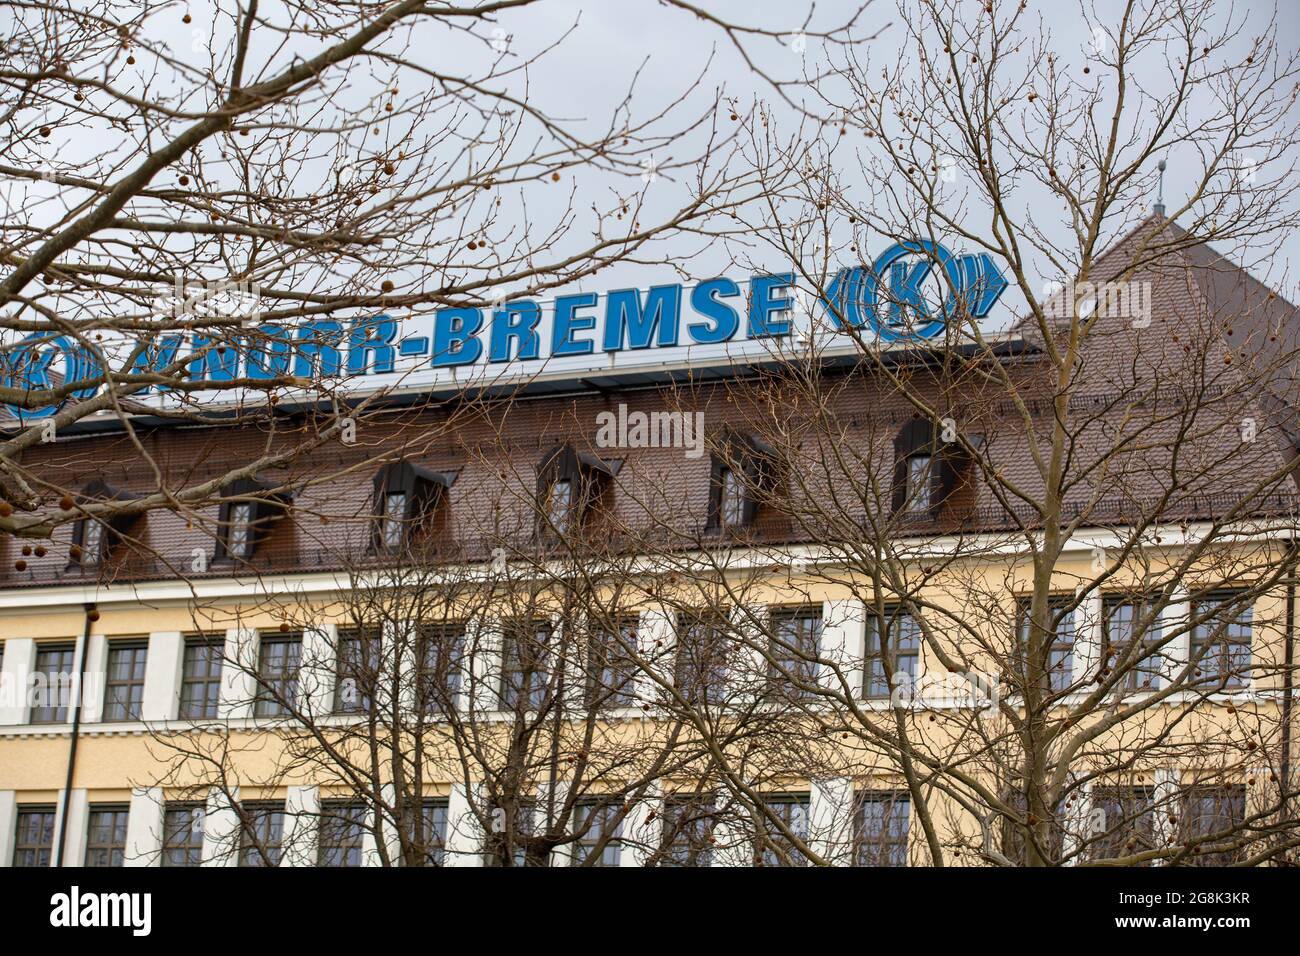 Der Hauptsitz von Knorr Bremse in München. Knorr-Bremse ist ein deutsches Unternehmen, welches weltweit führender Hersteller von Bremssystemen für Schienen- und Nutzfahrzeuge ist. 2018 ginging das Unternehmen an die Börse und ist aktuell im MDAX gelistet. (Foto di Alexander Pohl/Sipa USA) Credit: Sipa USA/Alamy Live News Foto Stock